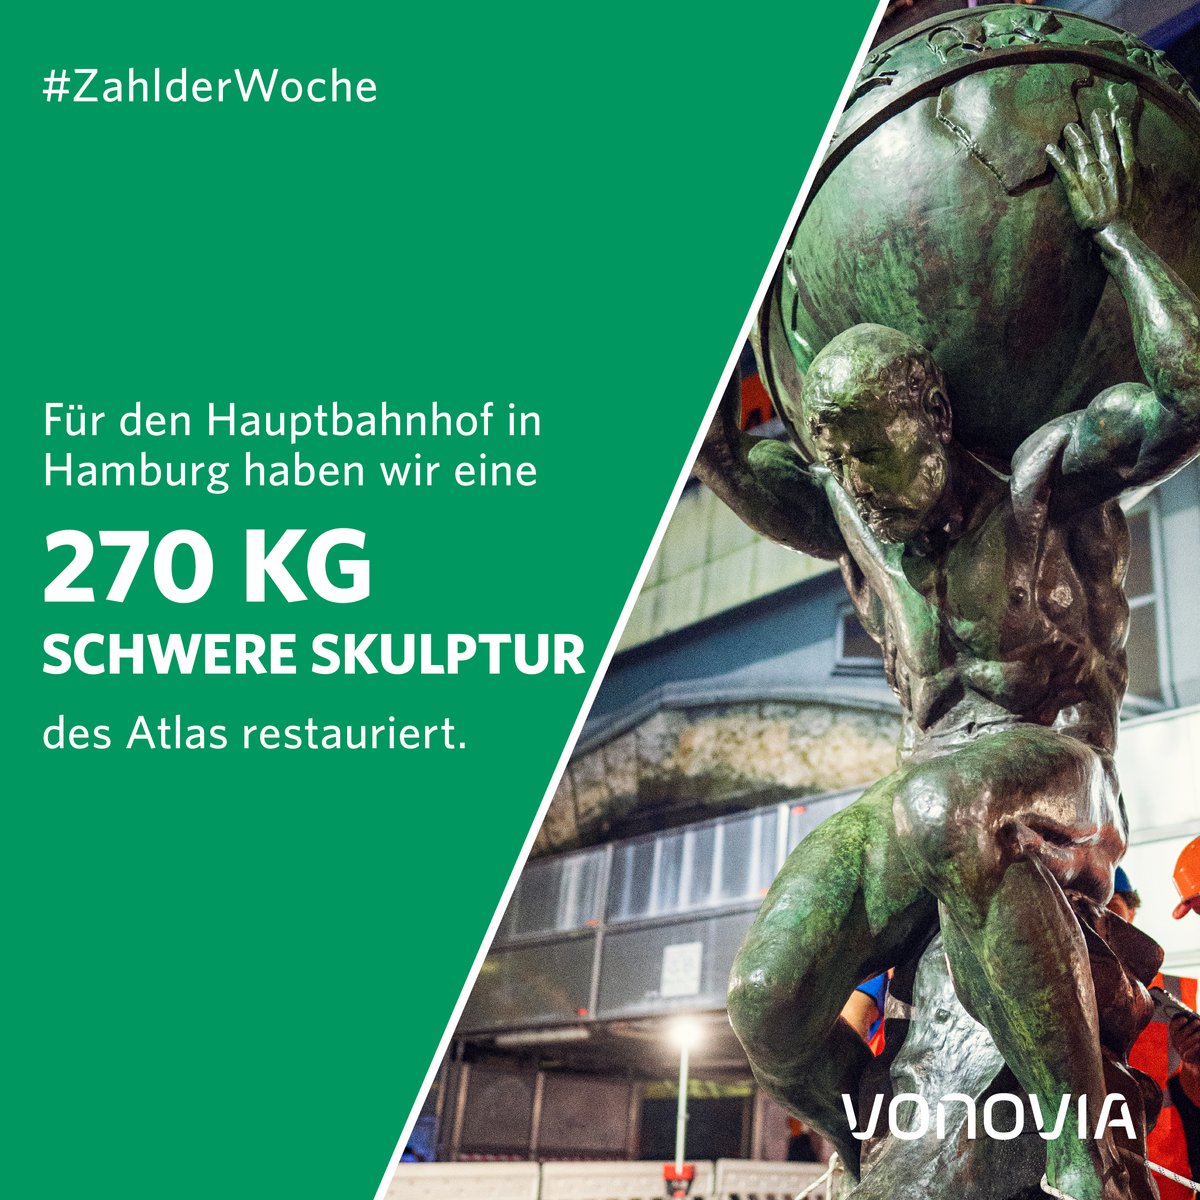 Eine schwergewichtige #VonoviaZahlderWoche: Die 270 kg schwere Atlas-Skulptur wurde von #Vonovia  aufwendig restauriert & ist nun an ihren ursprünglichen Platz auf dem Dach des Hamburger Hauptbahnhofs zurückgekehrt - nach knapp 80 Jahren! Mehr dazu: vonovia.com/presse/pressem…